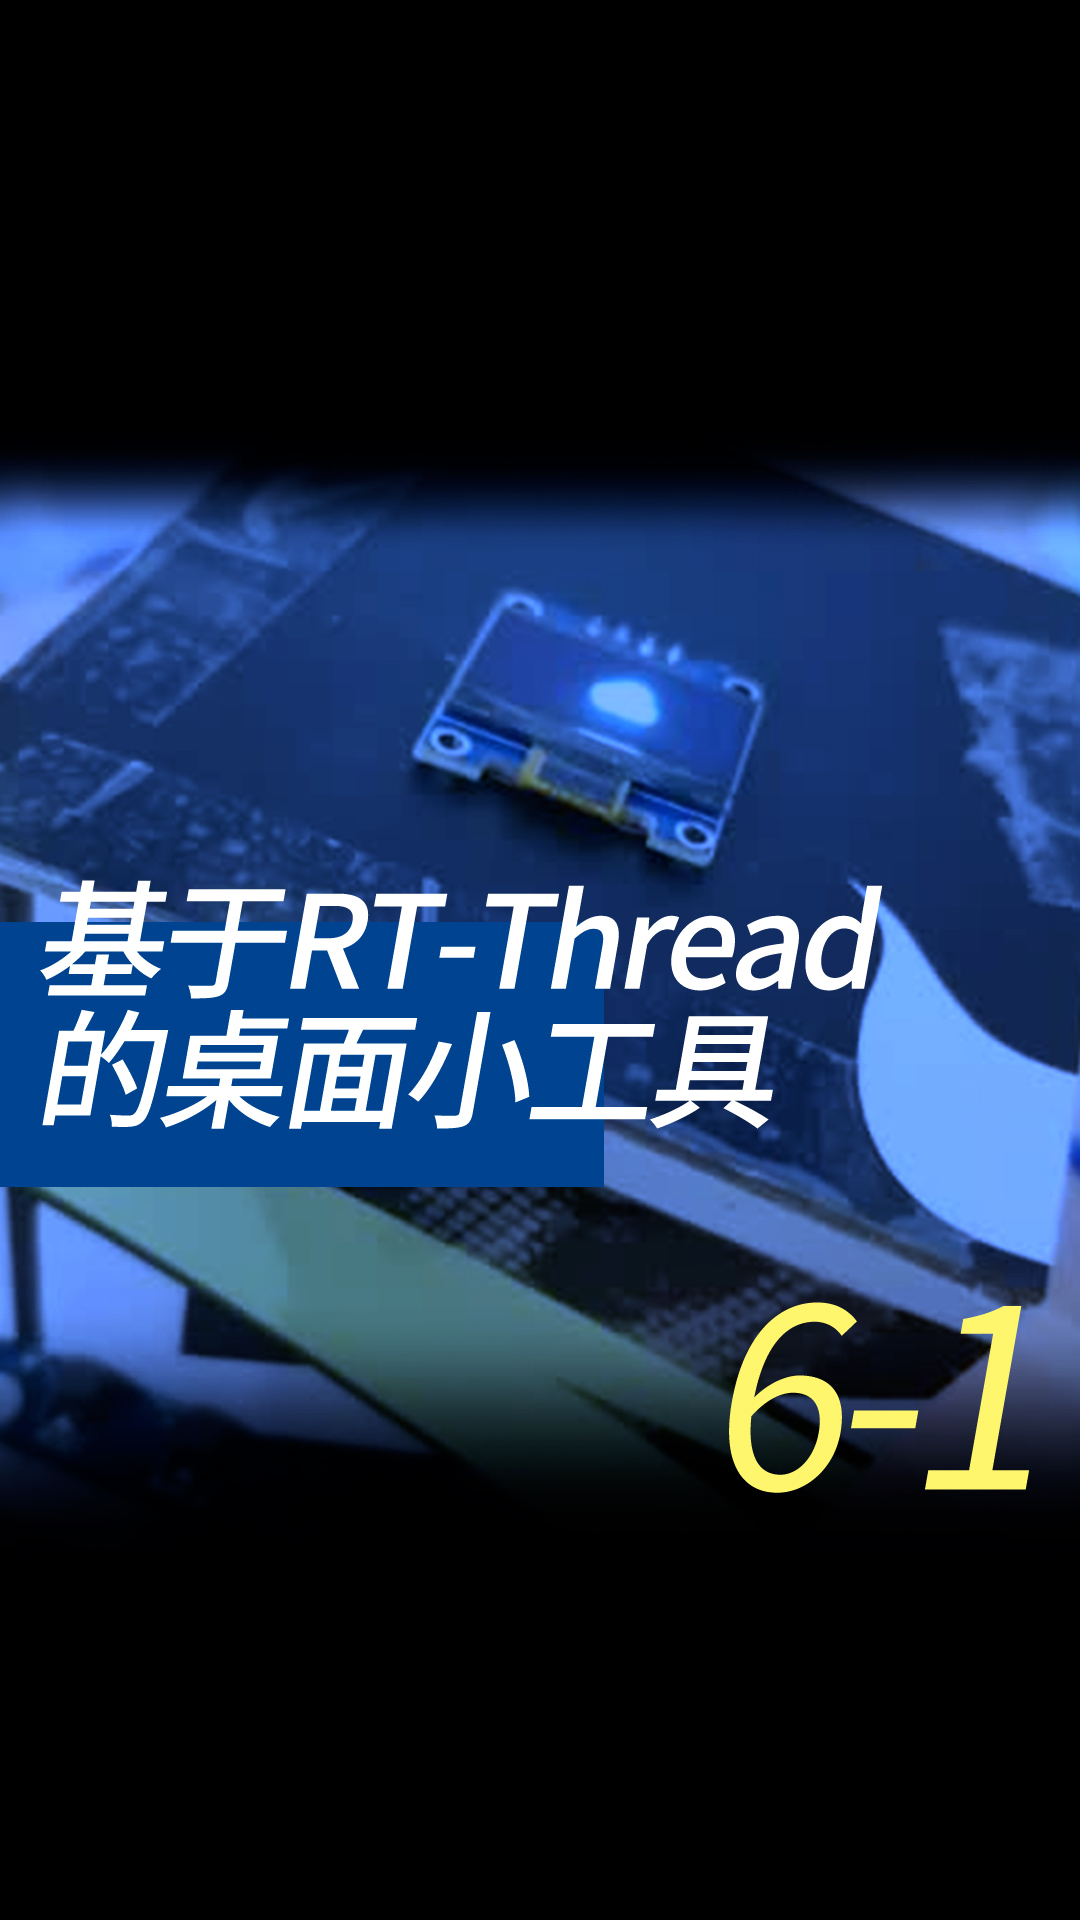 基于RT-Thread的桌面小工具 - 6-3-1驱动oled1